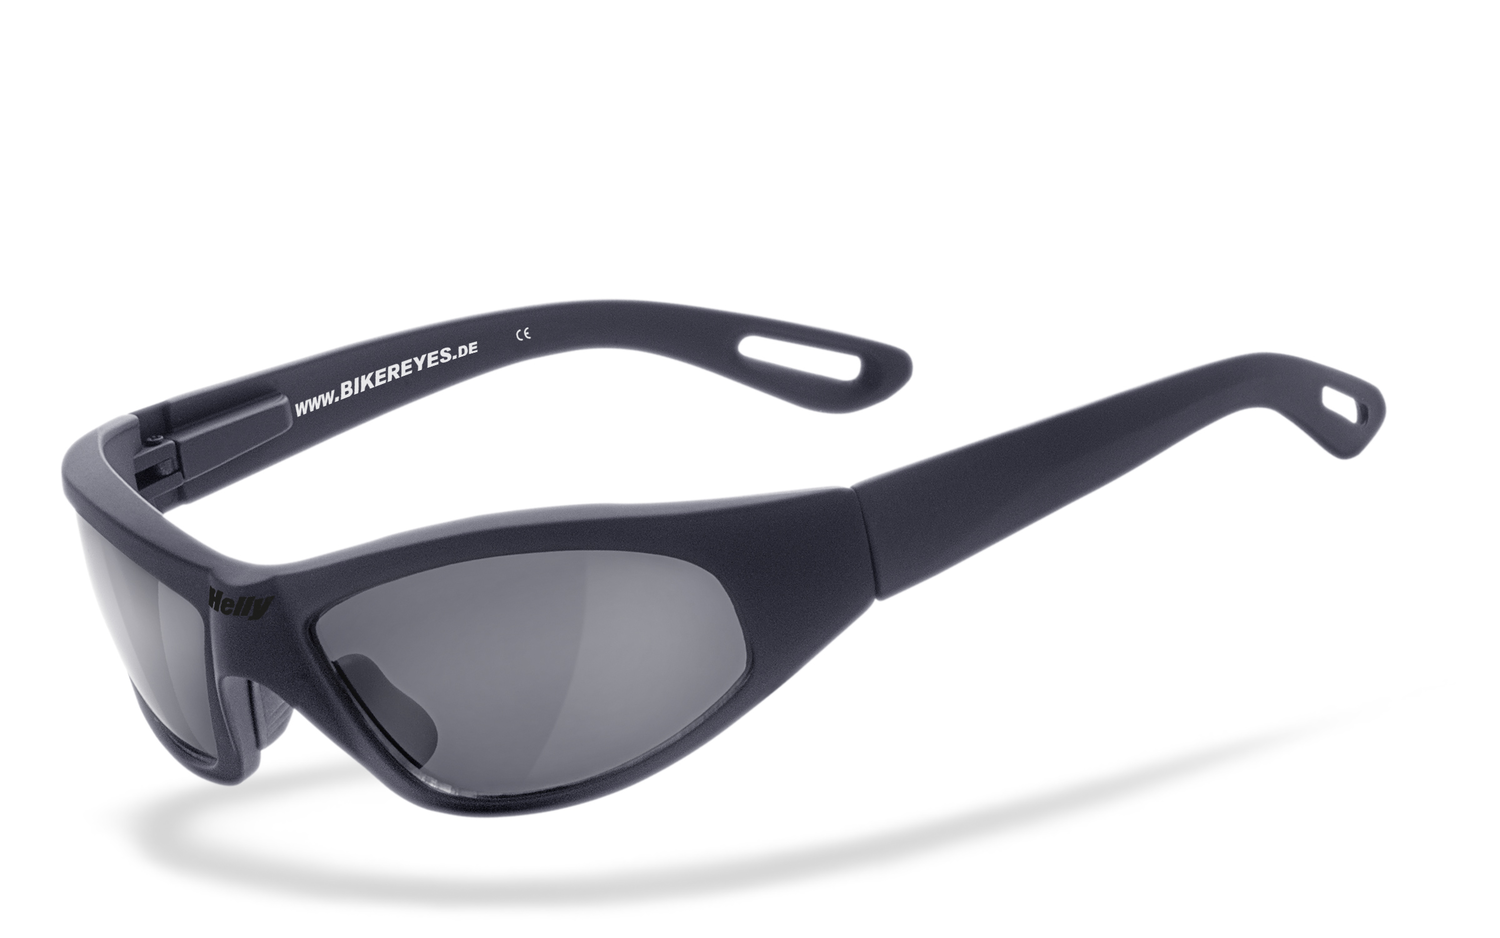 Helly Bikereyes | black angel  Sportbrille, Fahrradbrille, Sonnenbrille, Bikerbrille, Radbrille, UV400 Schutzfilter